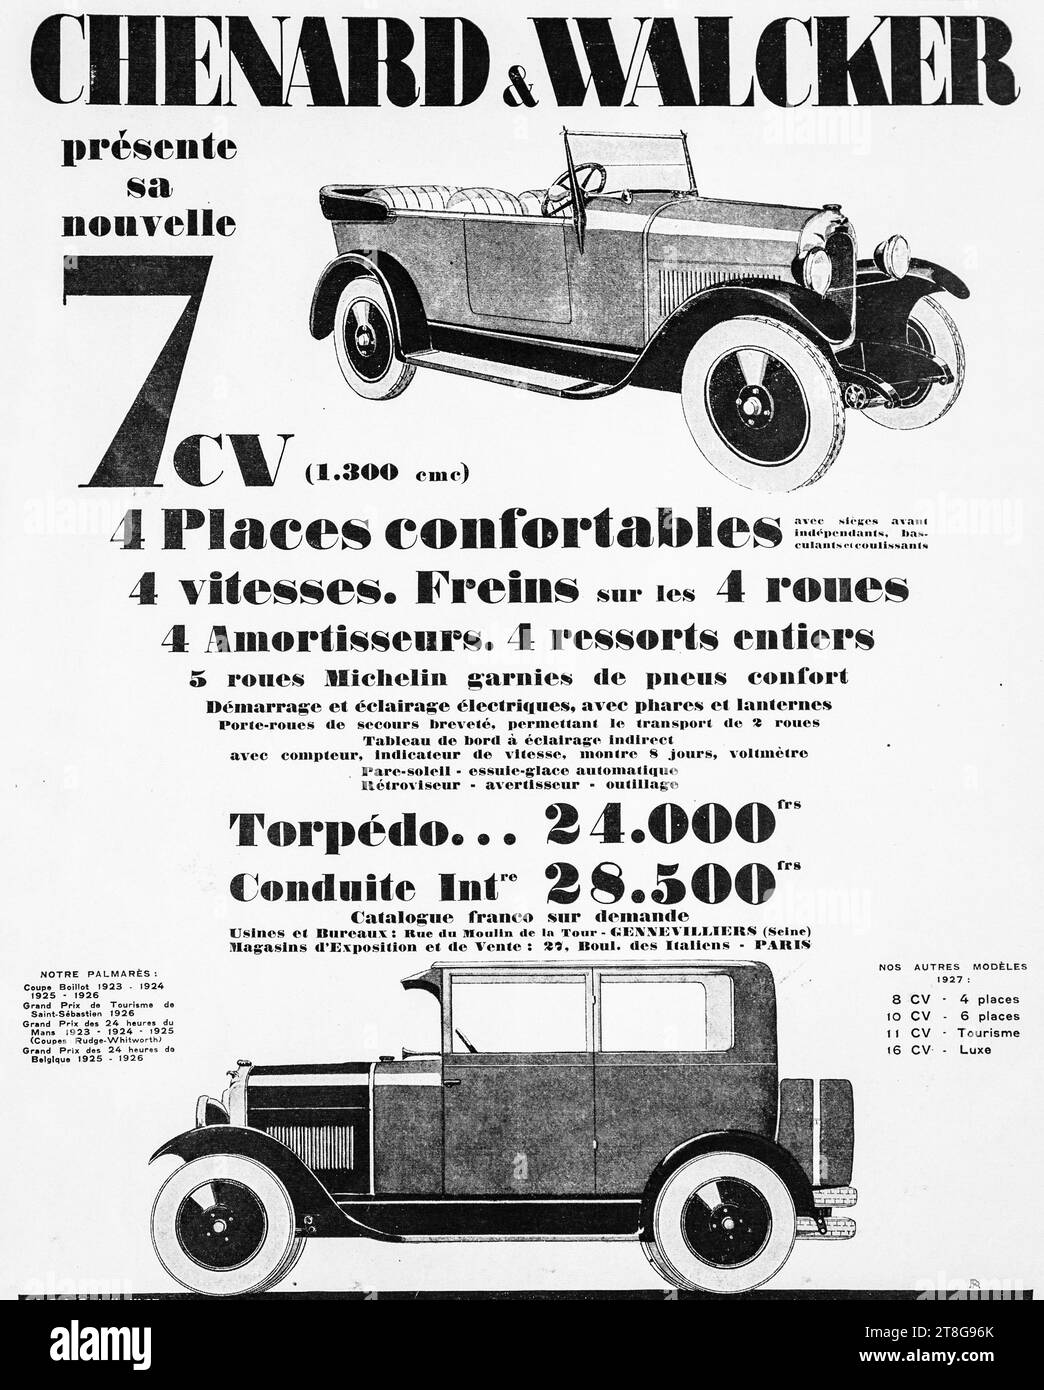 Werbung für Oldtimer aus den 1920er Jahren für Chenard & Walcker 7 CV Car. Stockfoto